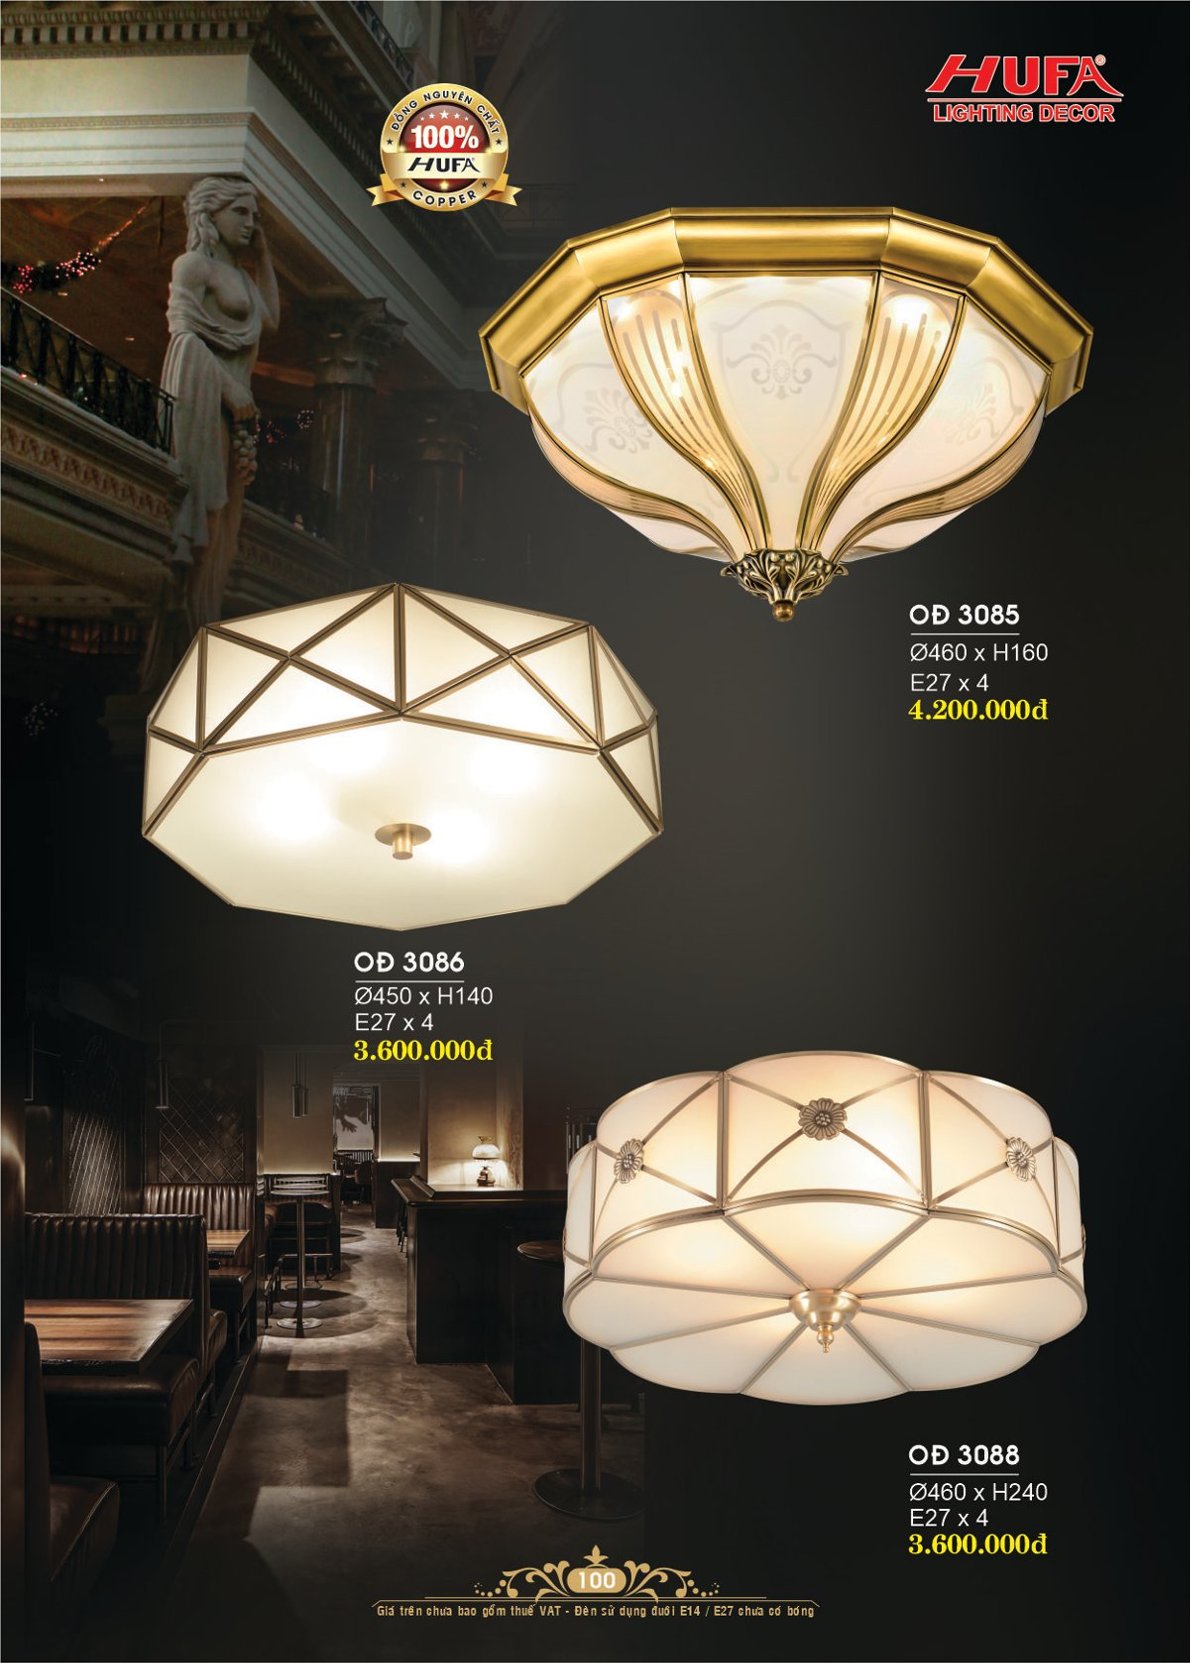 Đèn trang trí Hufa OĐ 3086, đèn ốp trần đồng nguyên chất, đèn trang trí cao cấp sang trọng, chính hãng, nhiều mẫu để lựa chọn, chất lượng tốt, giá rẻ nhất thị trường